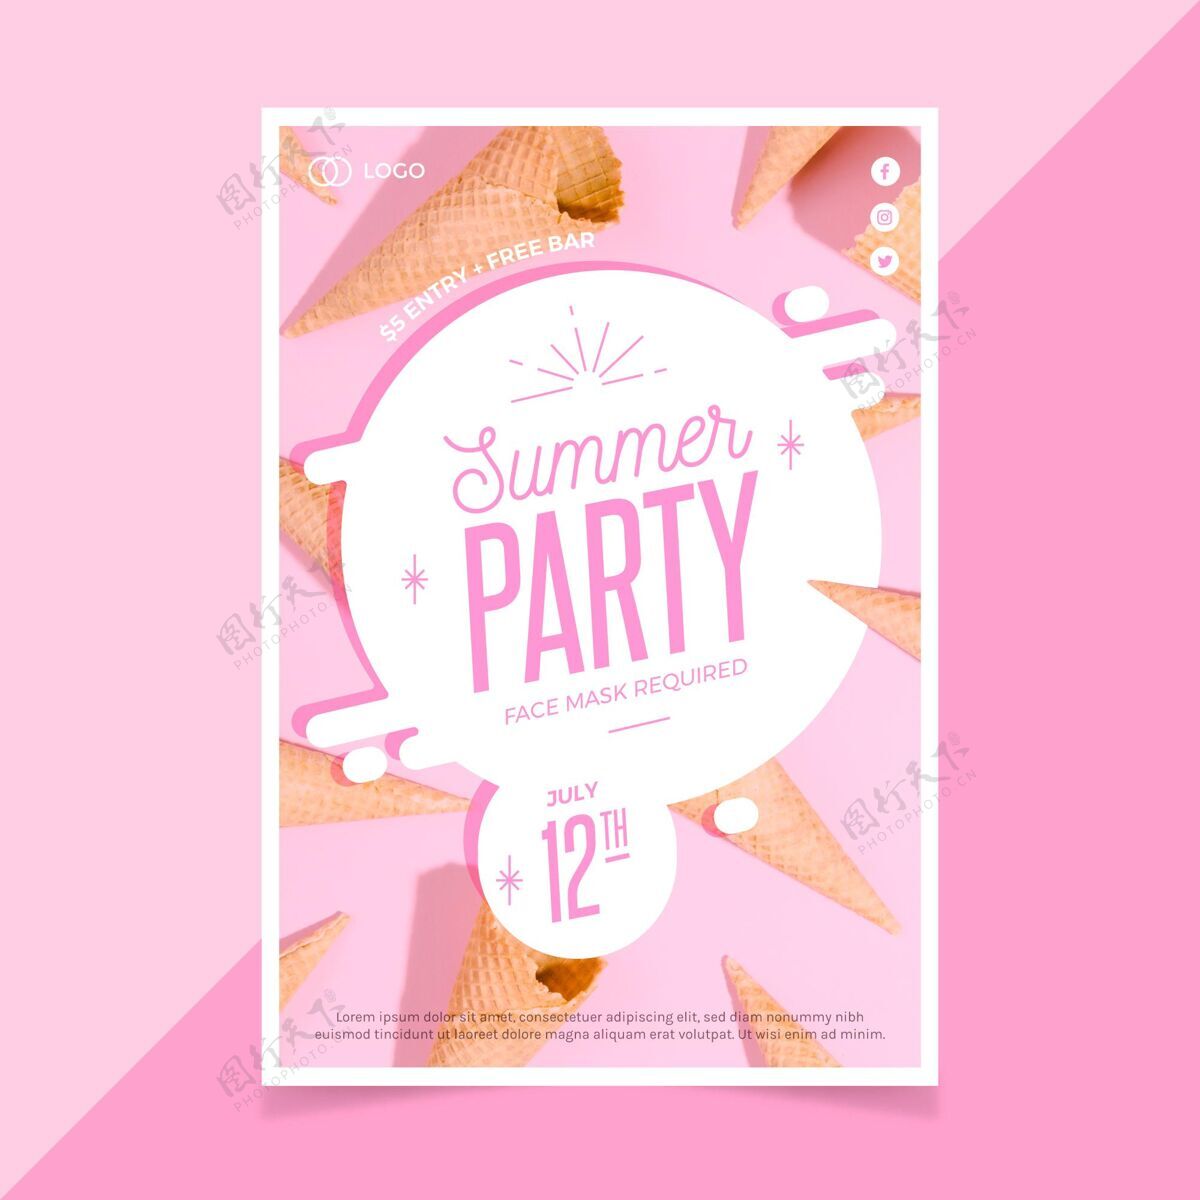 海报模板有机平面夏季派对垂直海报模板派对传单夏季模板夏季派对海报